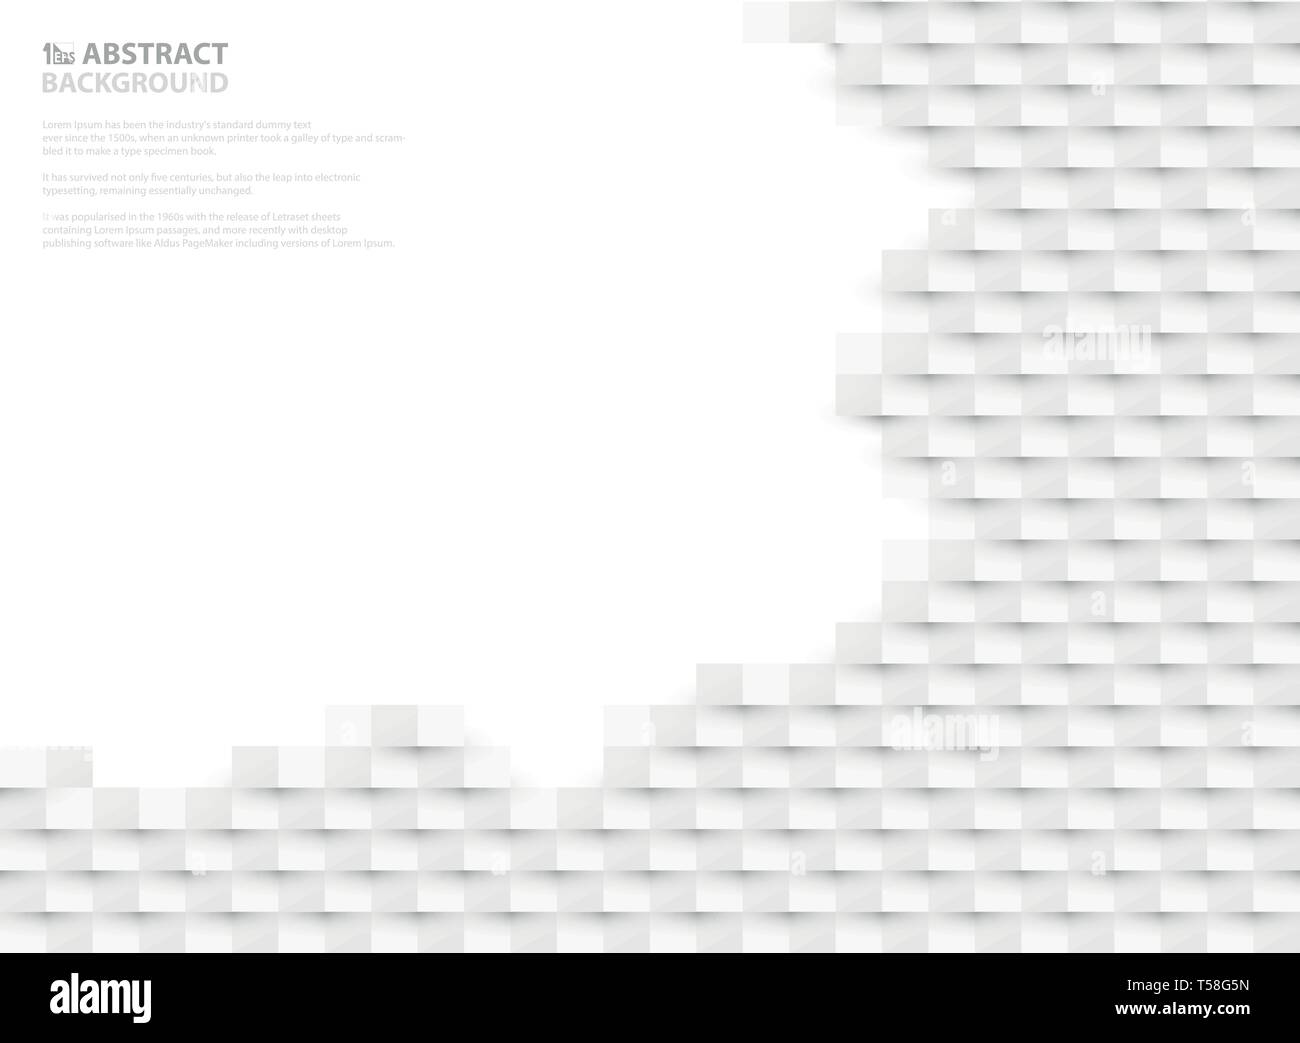 Abstract white paper cut pattern design d'espace libre. Vous pouvez utiliser pour votre annonce, affiche, présentation, conception de la couverture, de la tête, l'espace libre du texte, illustration Illustration de Vecteur